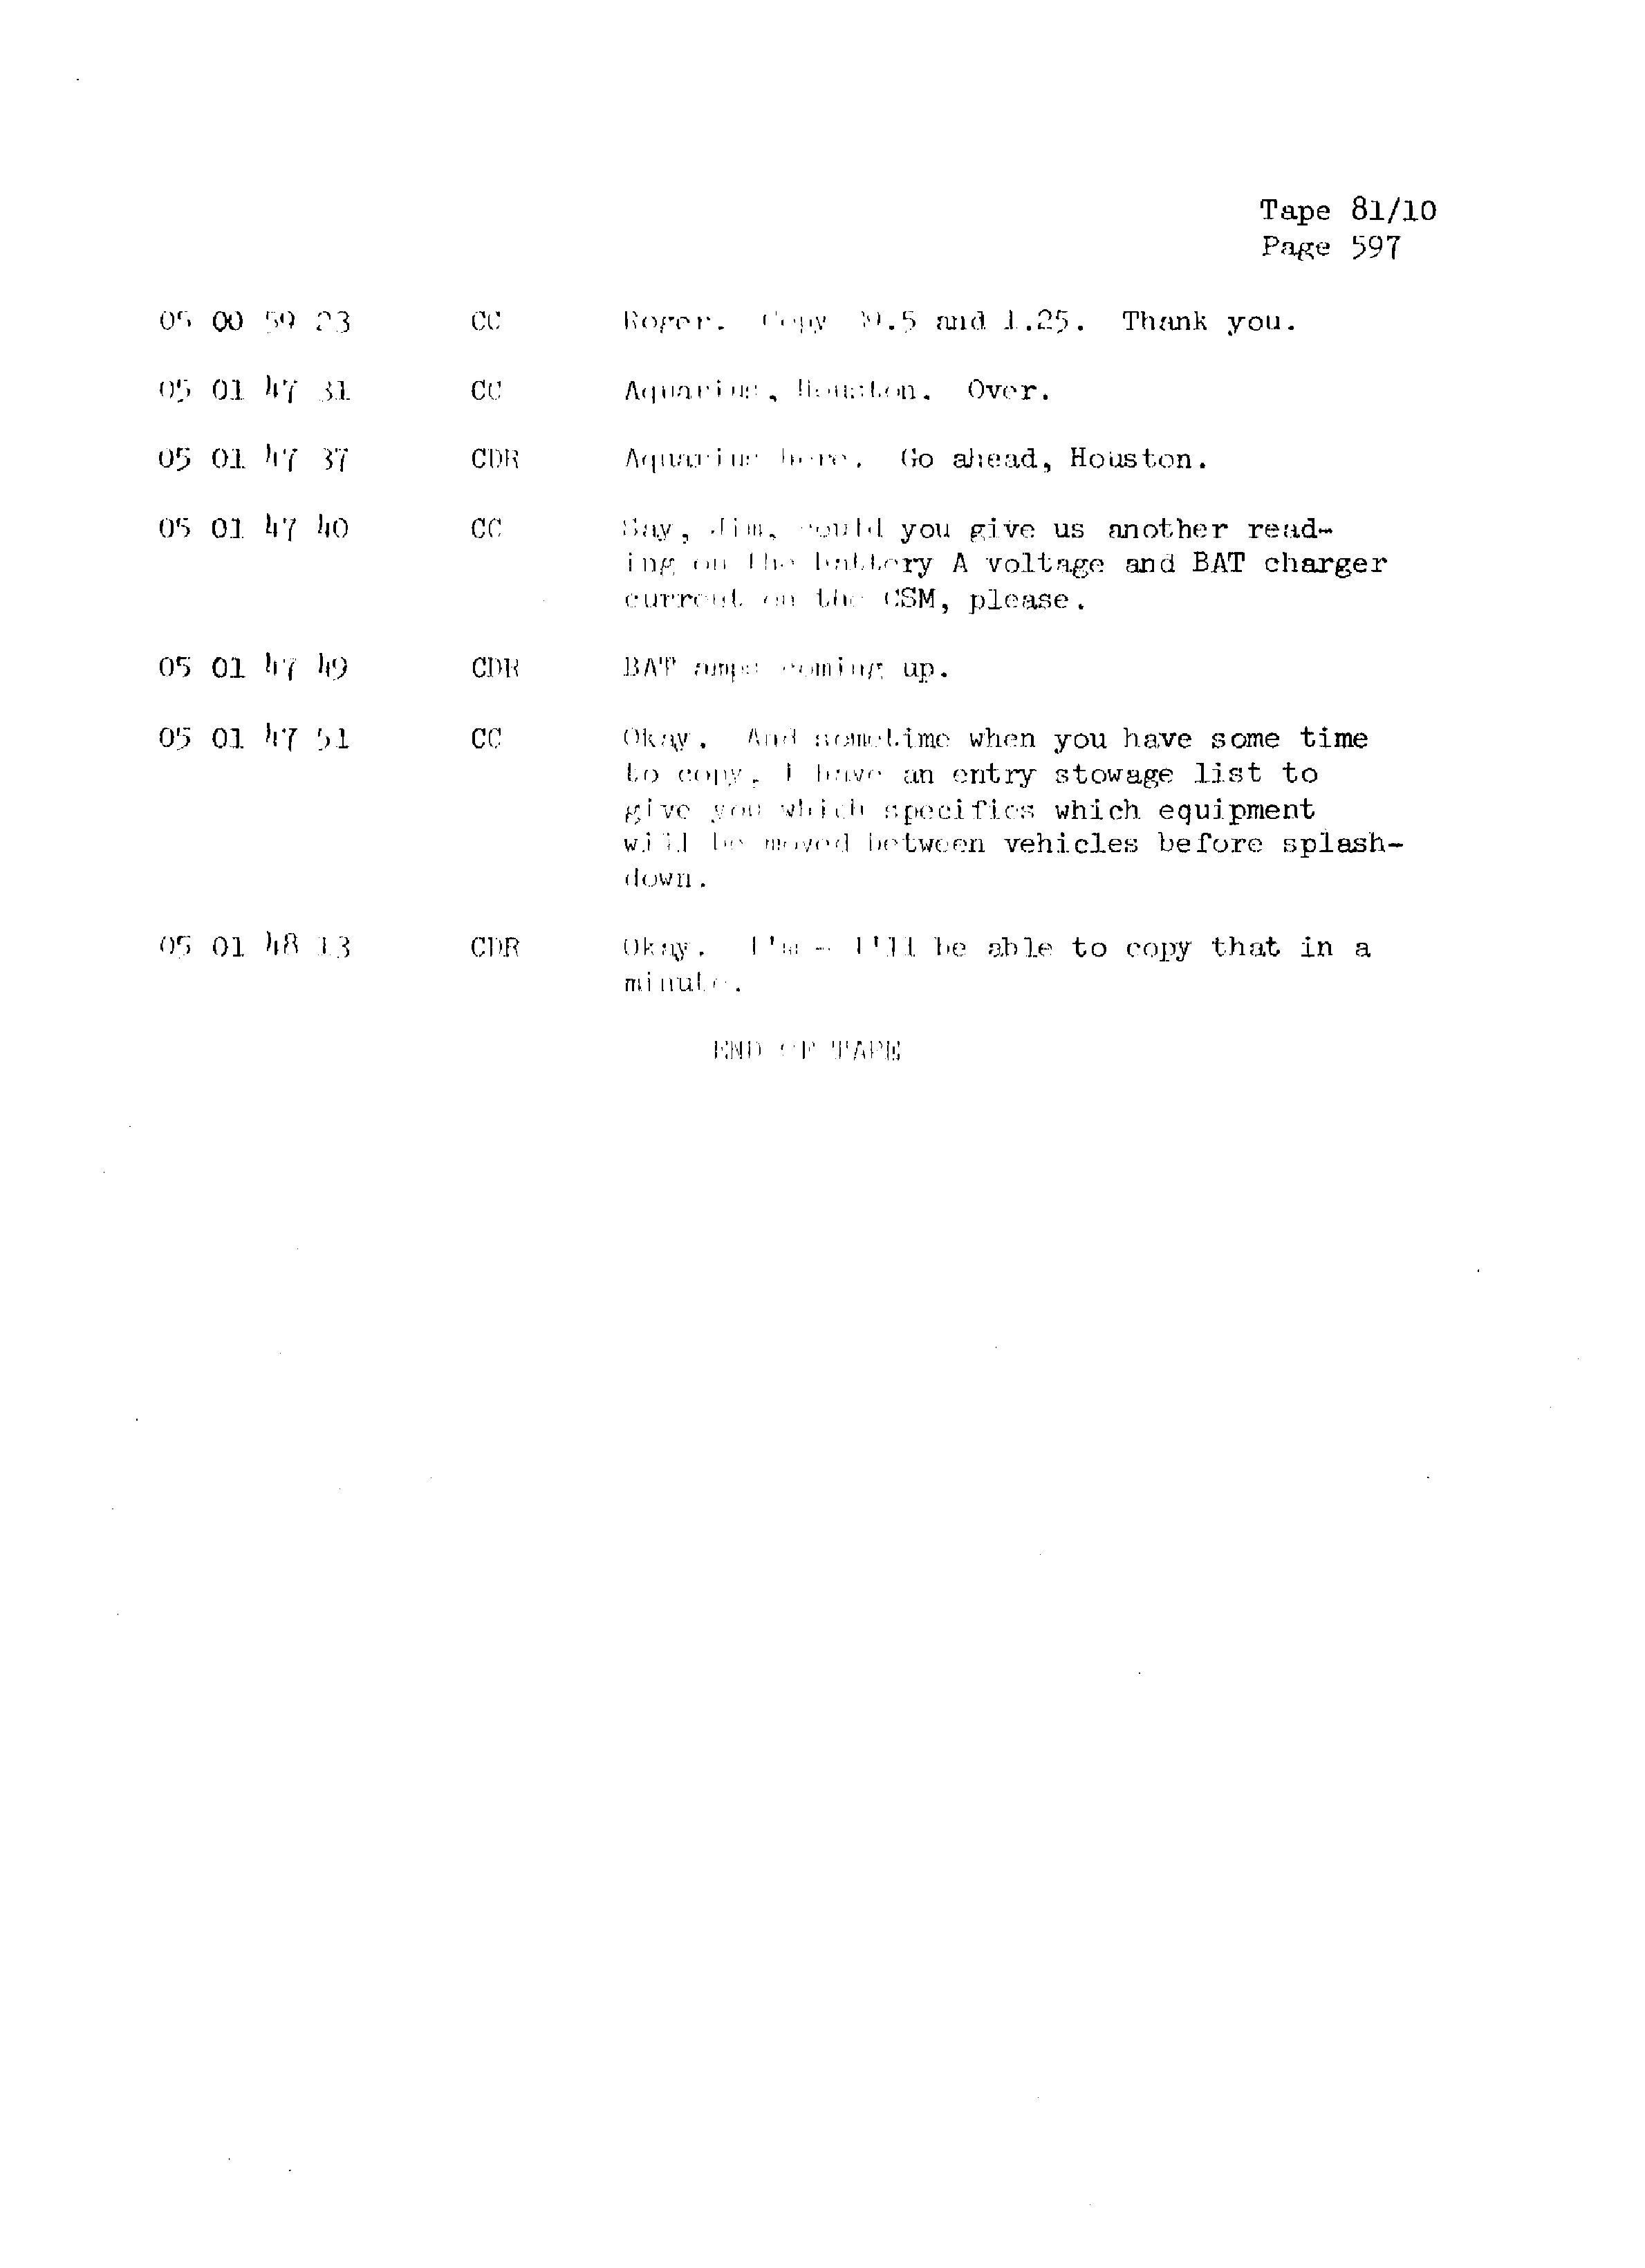 Page 604 of Apollo 13’s original transcript